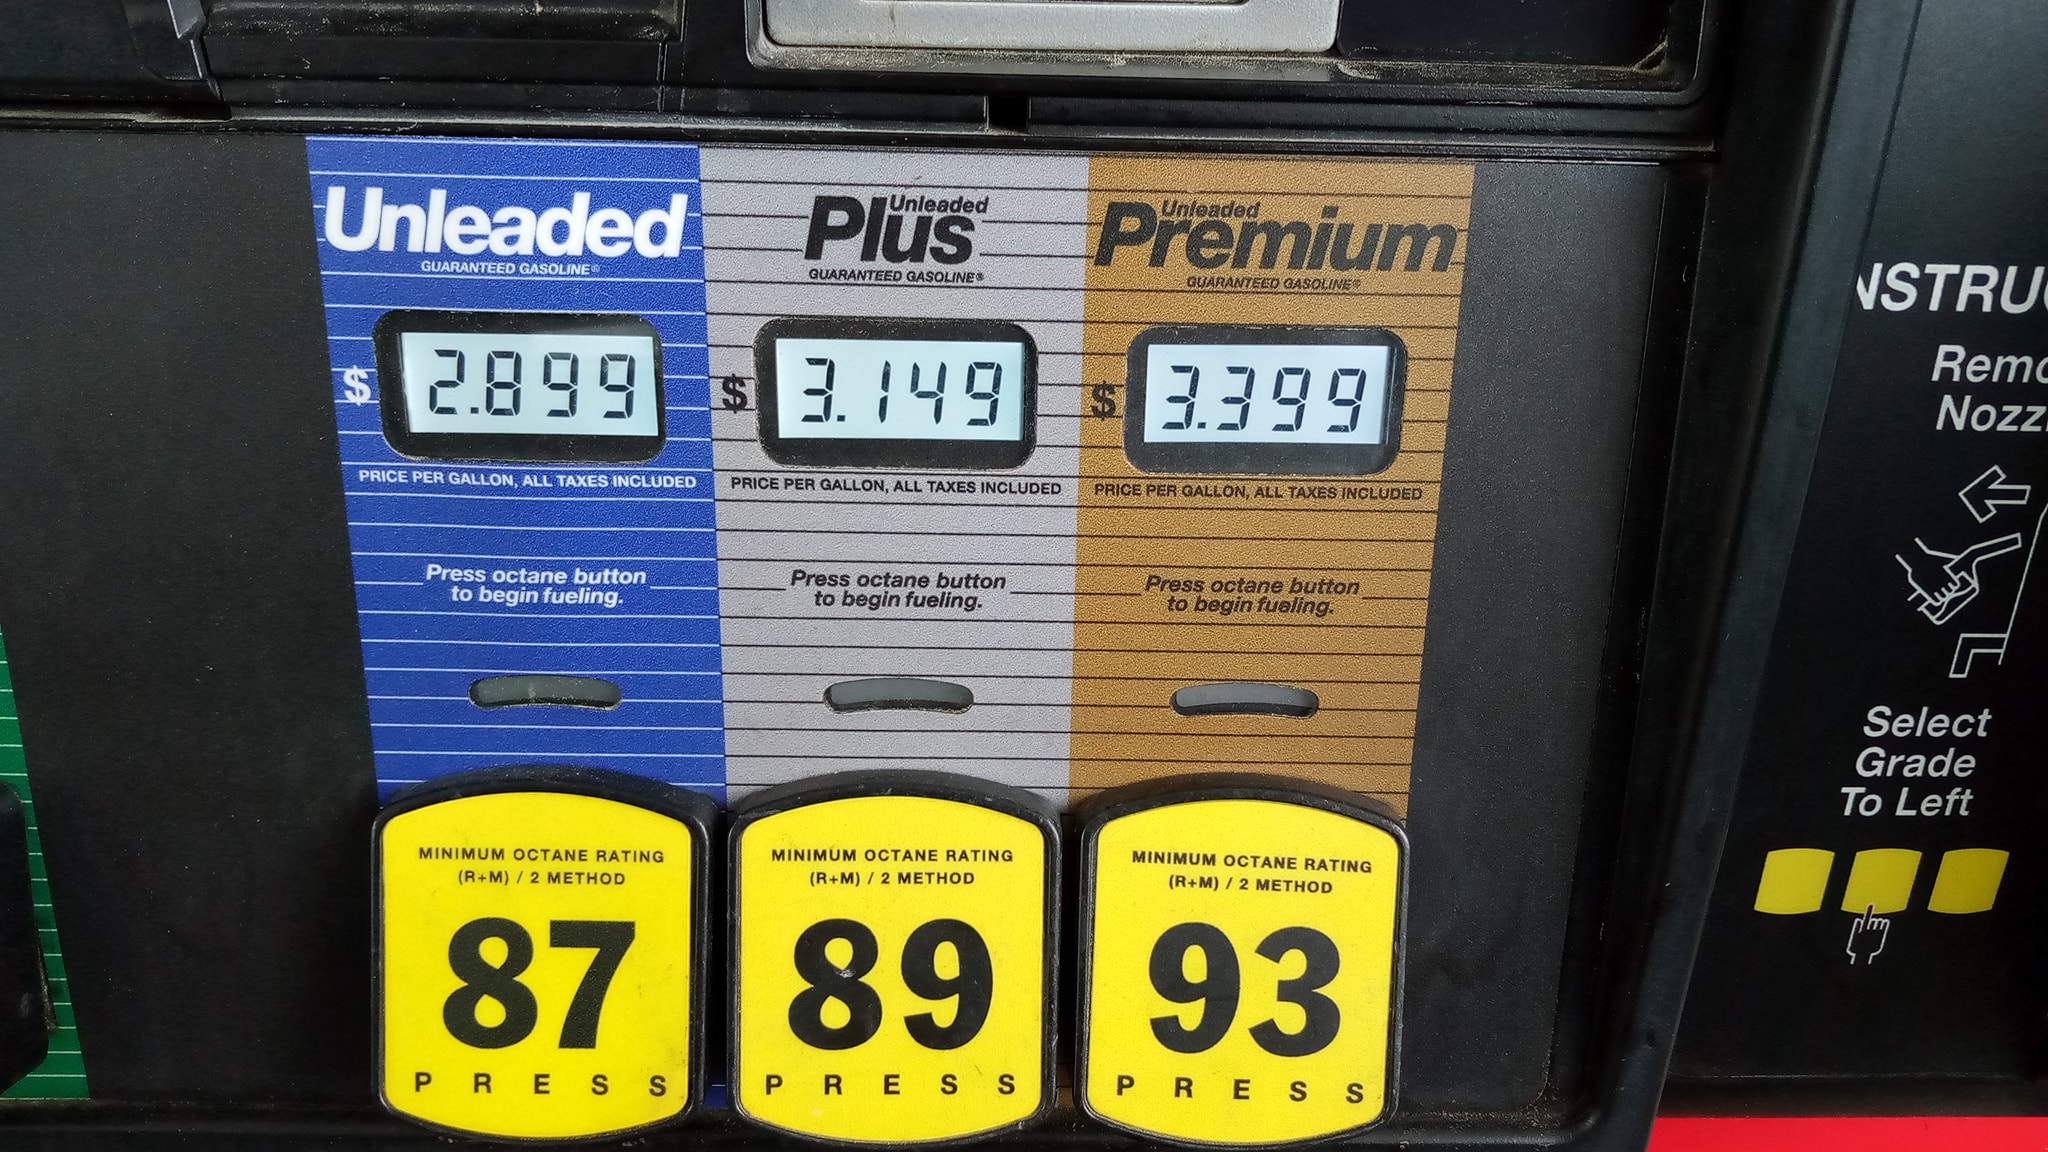  Sigue aumentando el precio de gasolina en Georgia